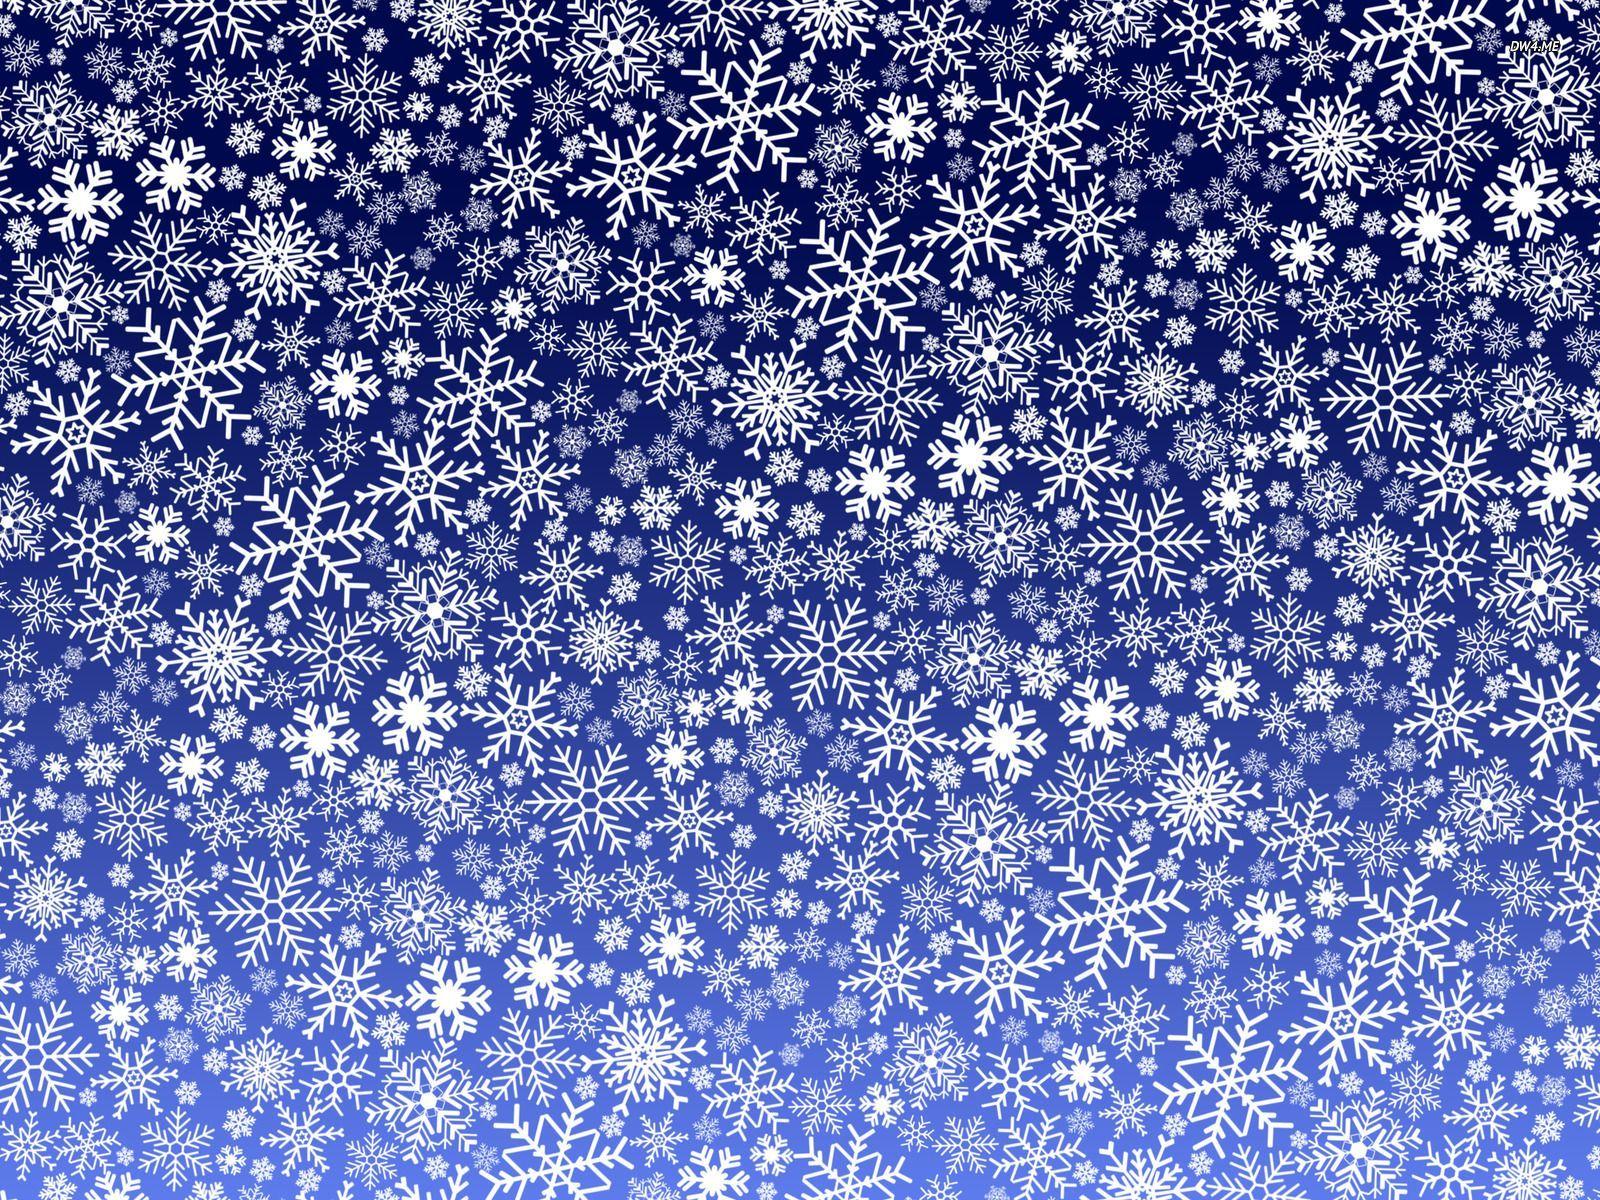 Free HD Wallpaper. Snowflake